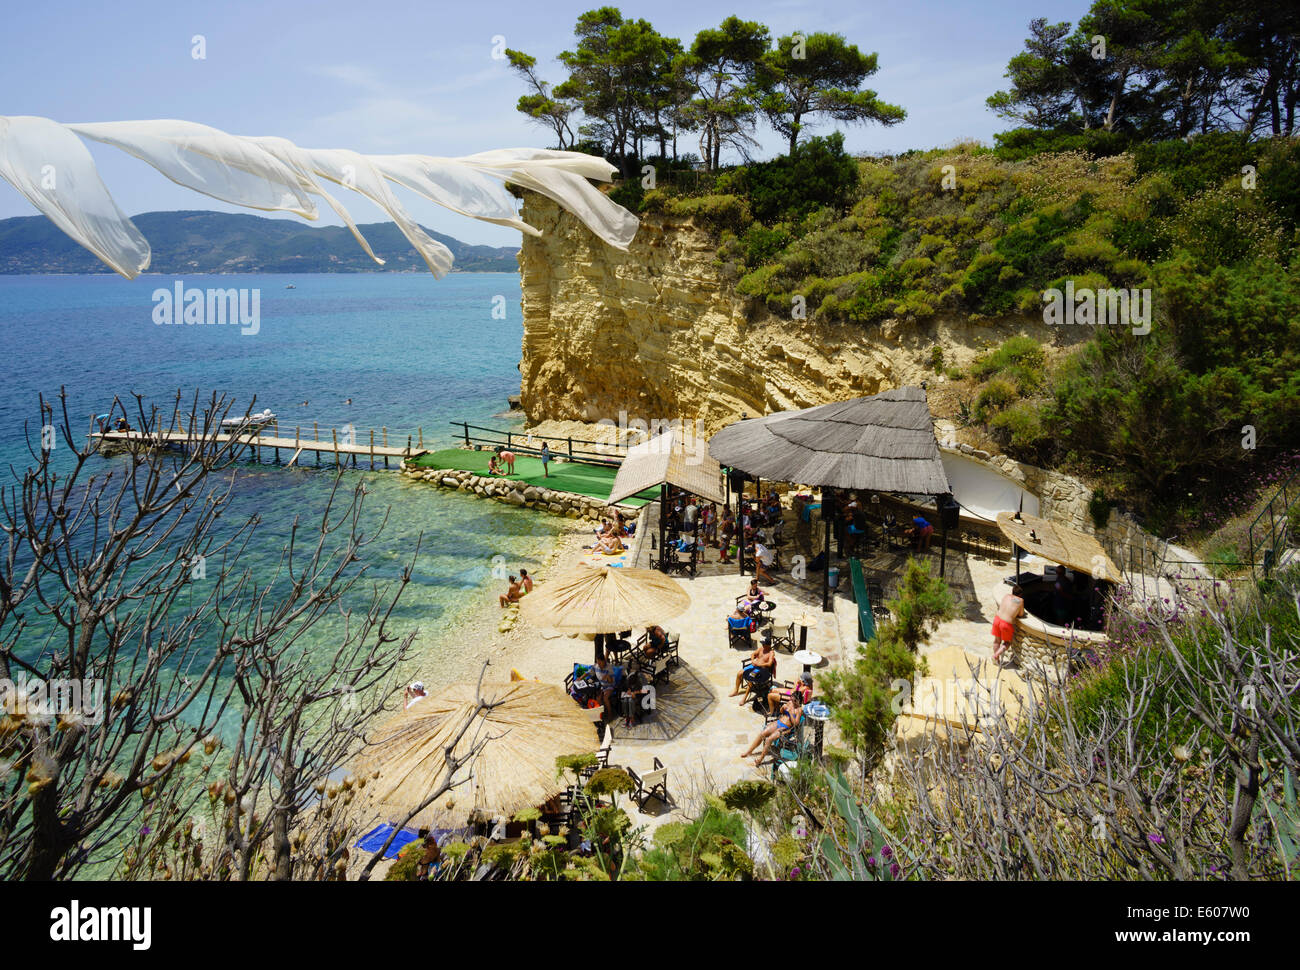 Zante, Grecia - Agios Sostis Private Island Resort con hosting bar y beach club de música. Club de playa con el día y la noche DJ parte Foto de stock